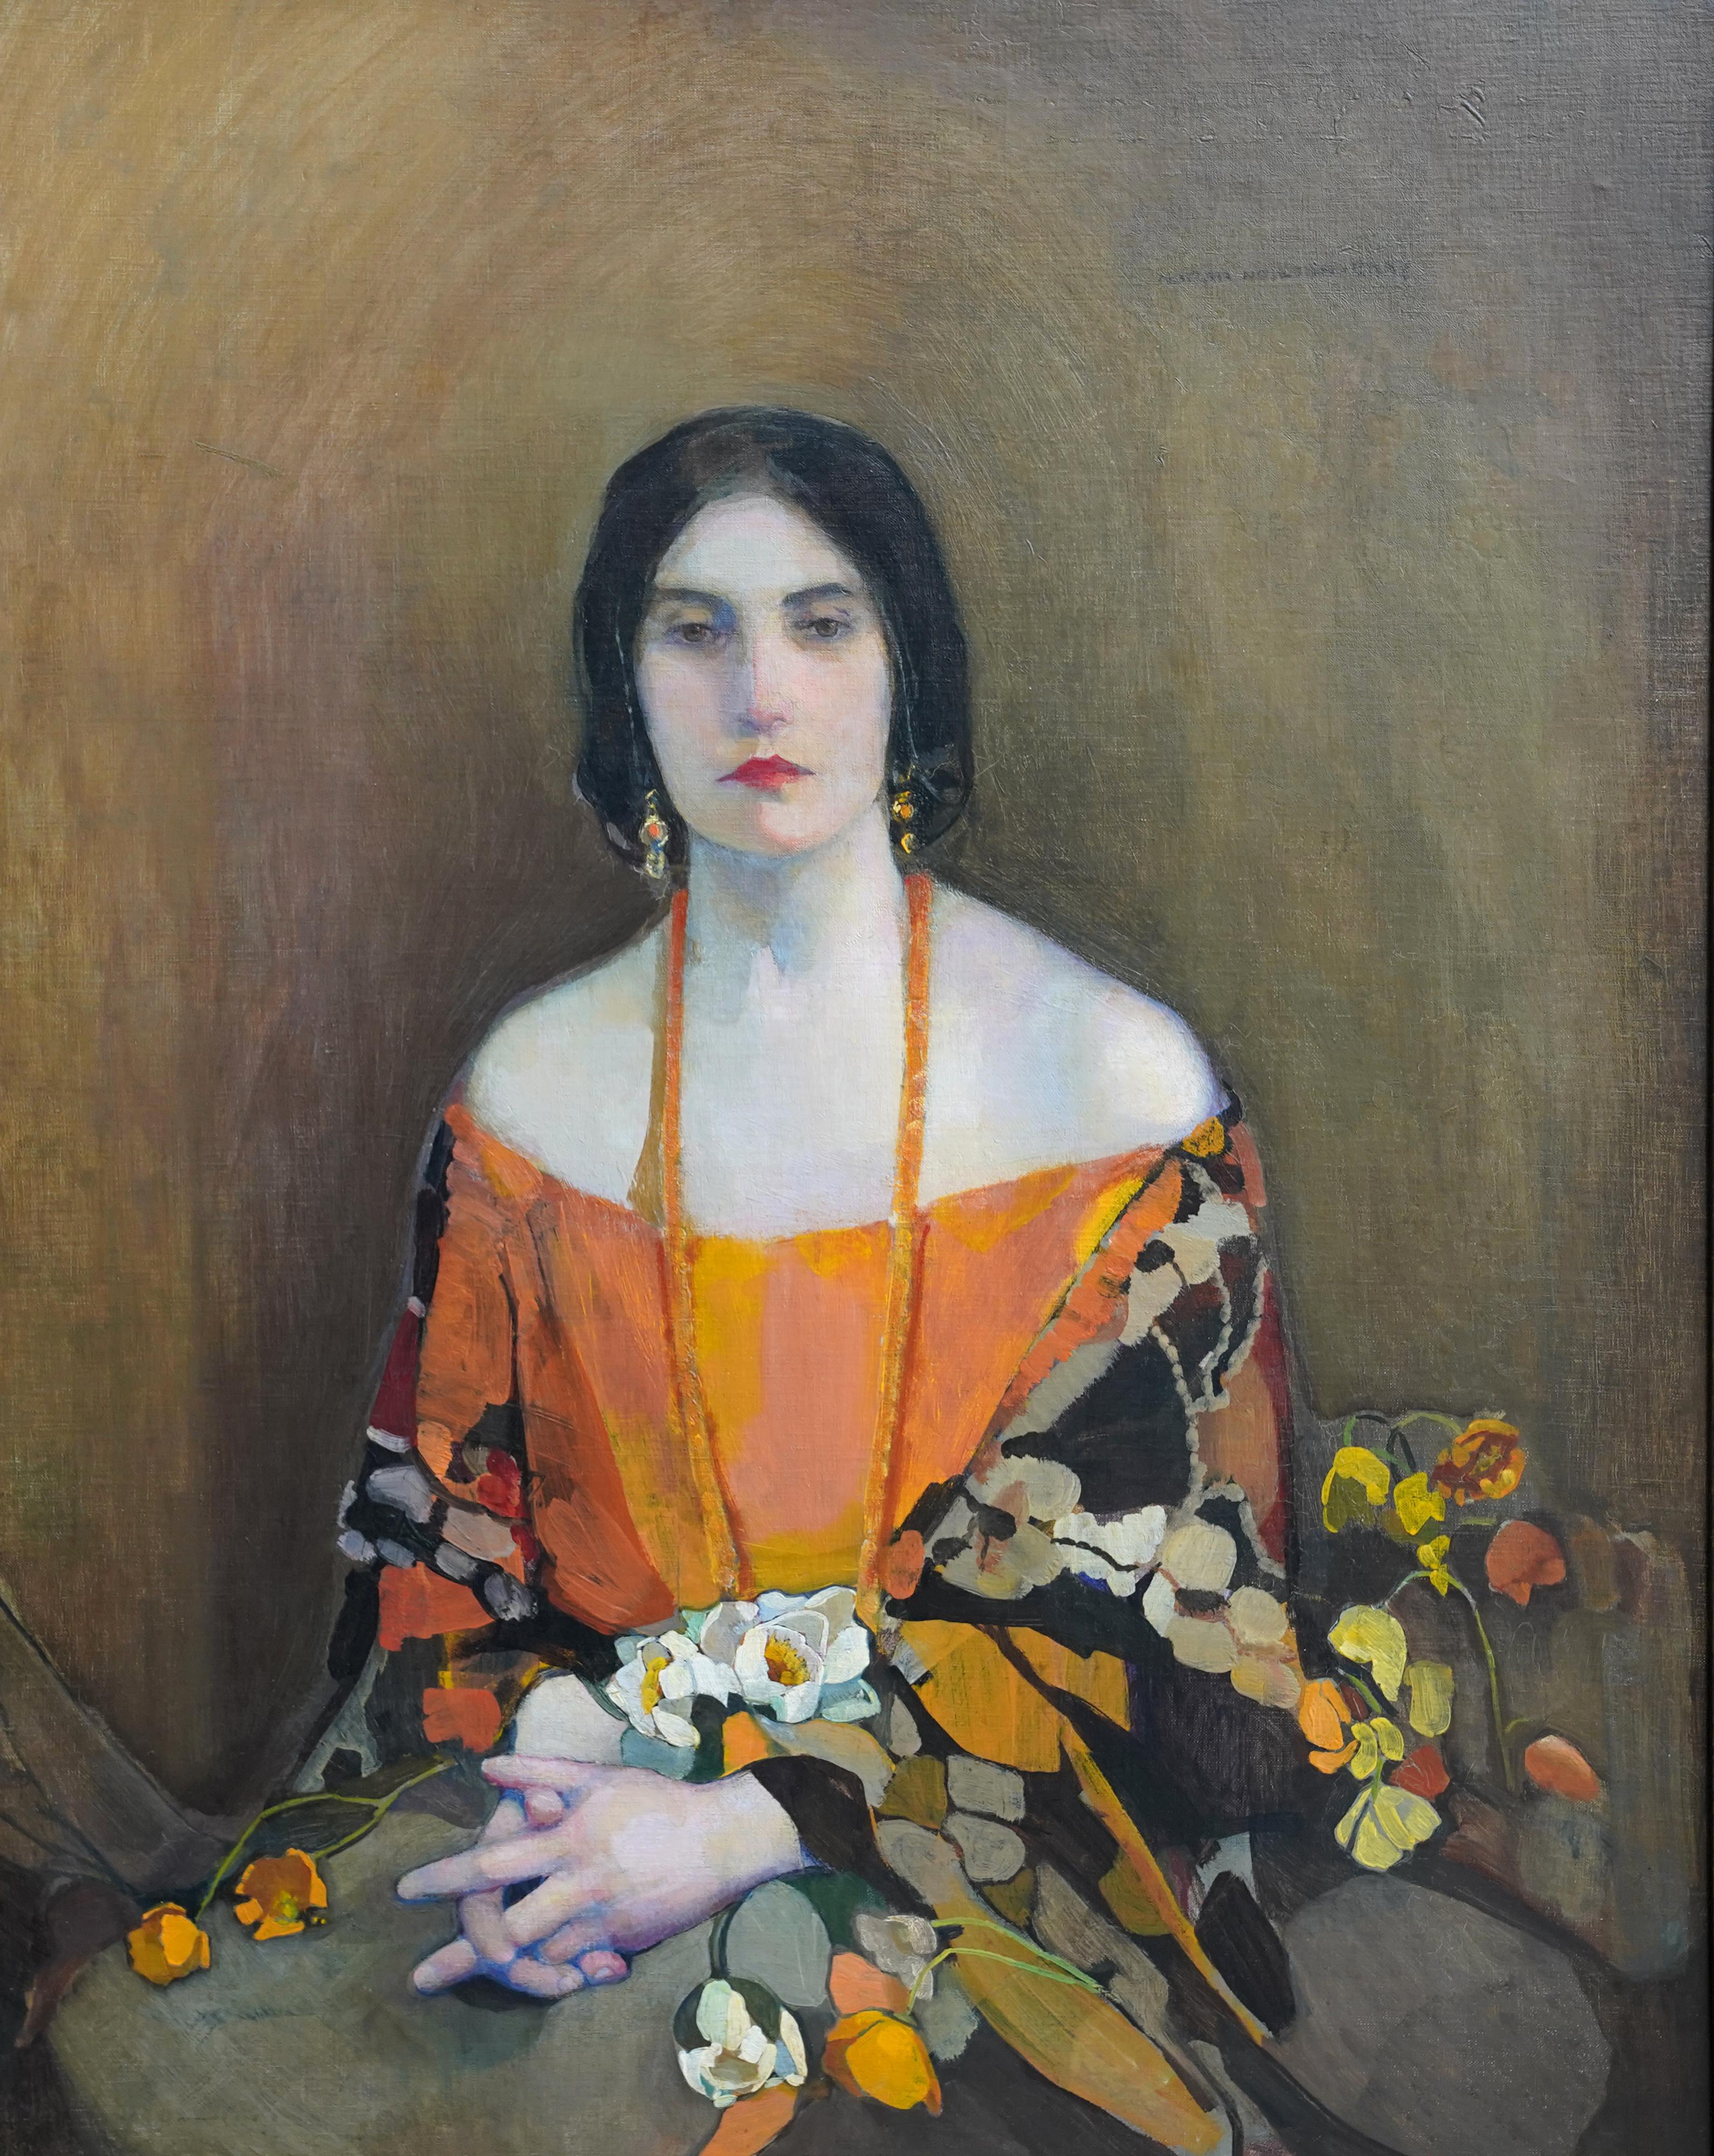 Exotique - peinture à l'huile écossaise des années 1920 exposée 'Glasgow Girl' portrait d'art - Painting de Norah Neilson Gray